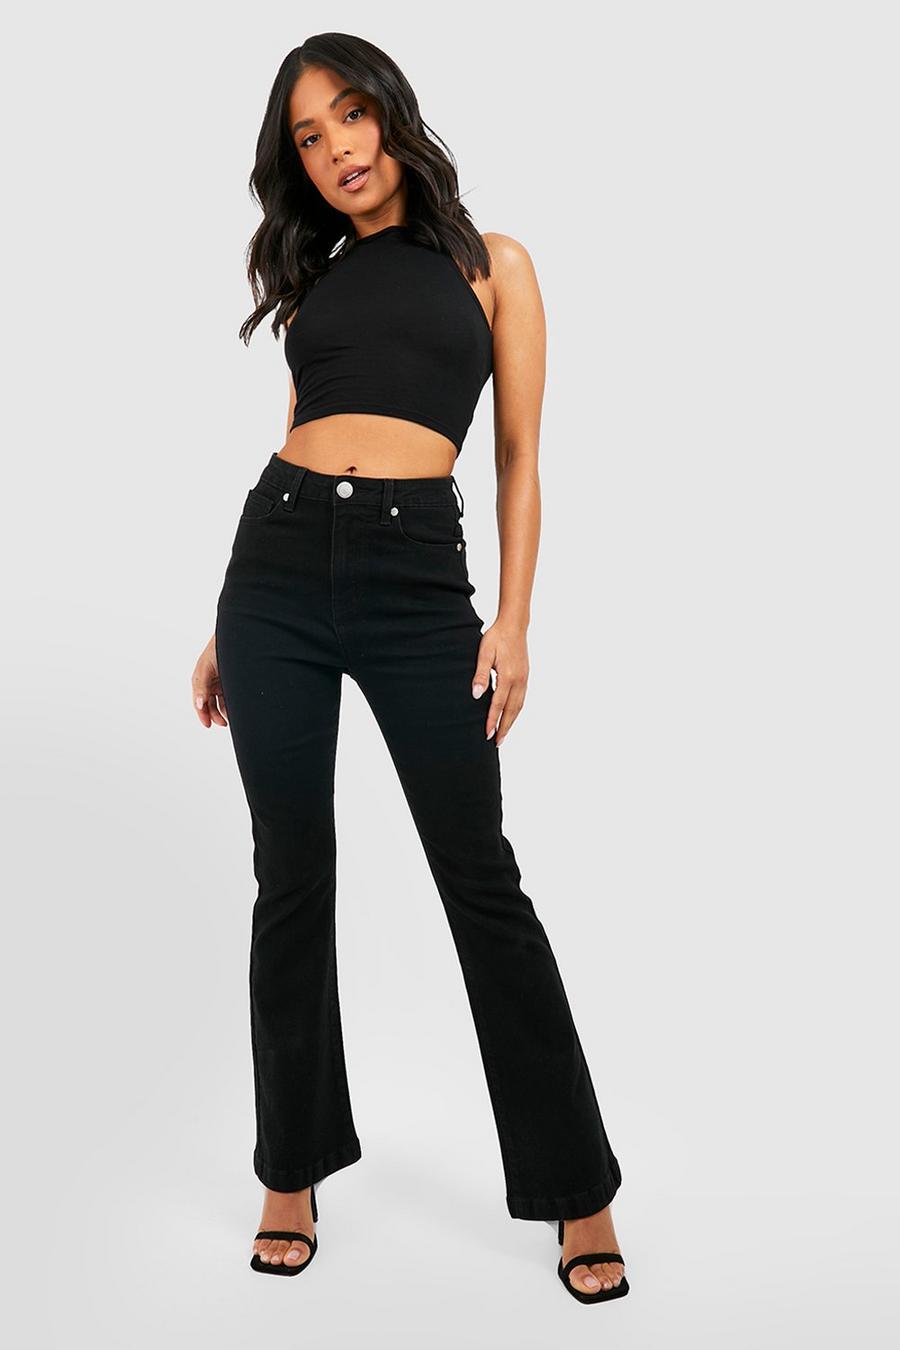 שחור nero מכנסי ג'ינס מתרחבים High Waist באורך רגל 76 ס'מ, פטיט